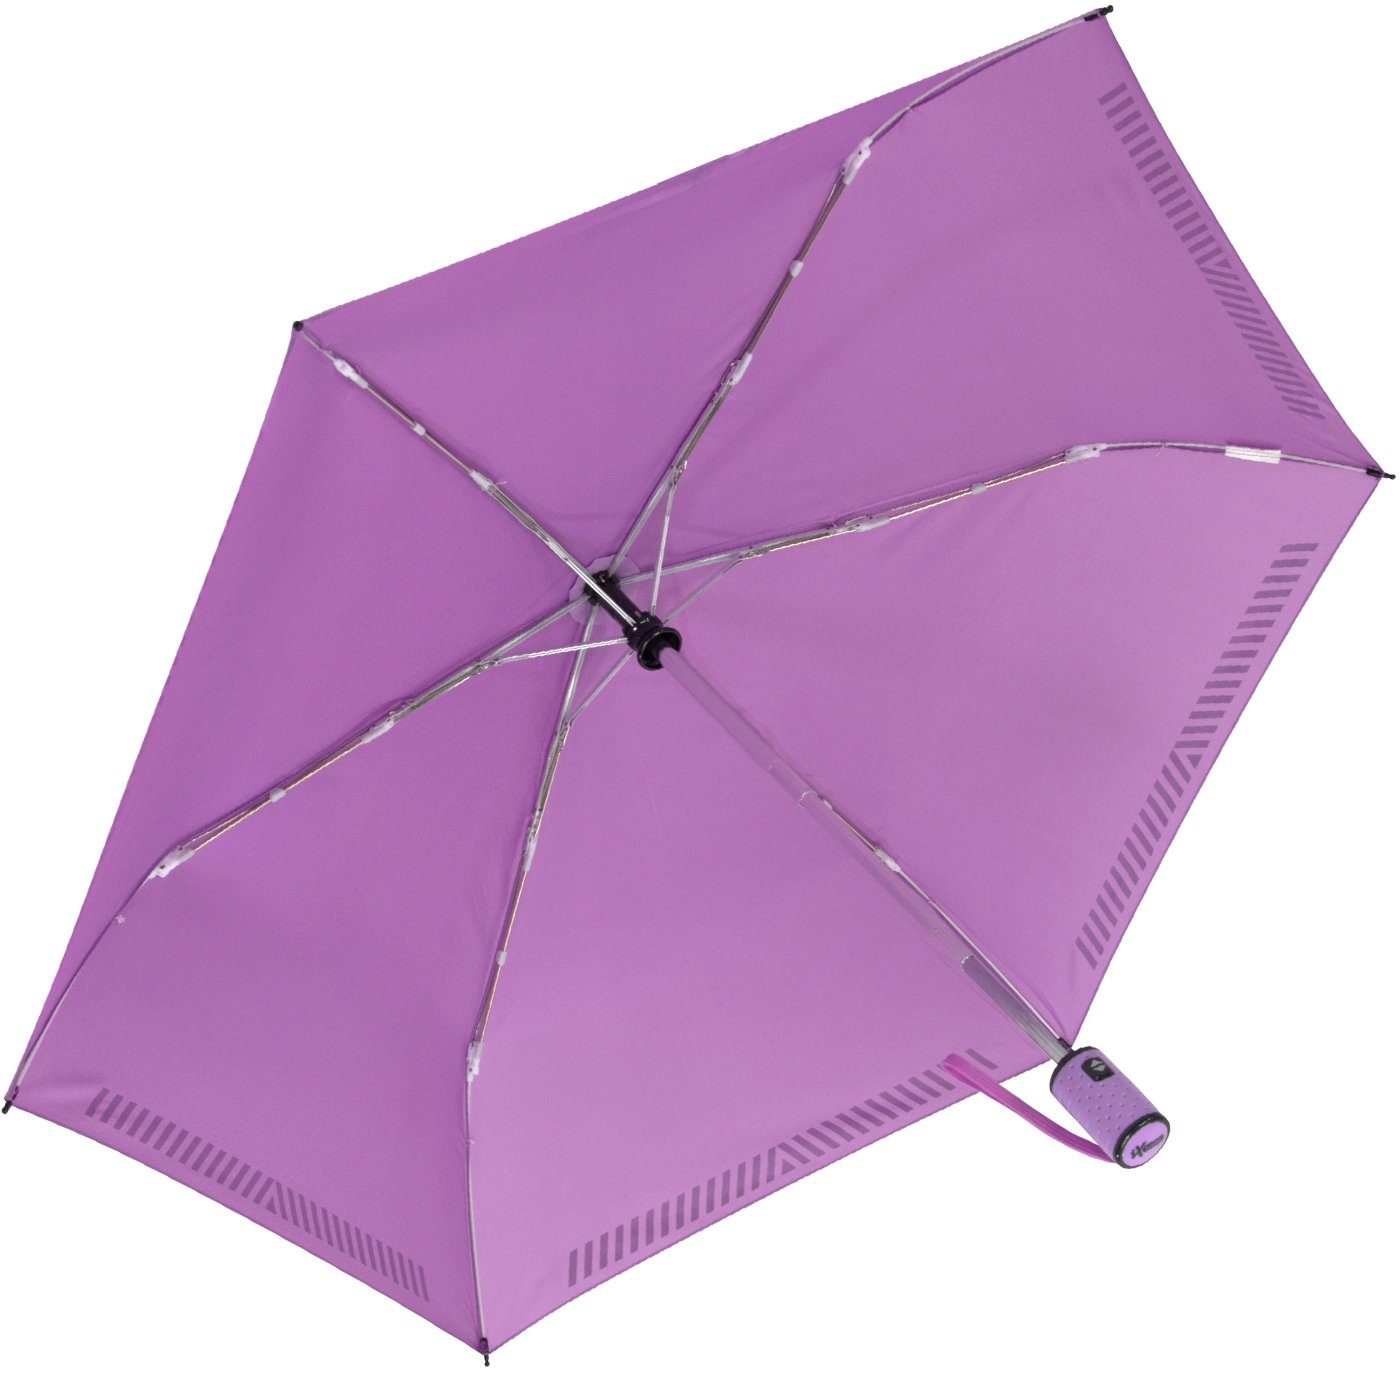 iX-brella Taschenregenschirm Kinderschirm mit Sicherheit Auf-Zu-Automatik, reflektierend, durch hell-lila Reflex-Streifen 